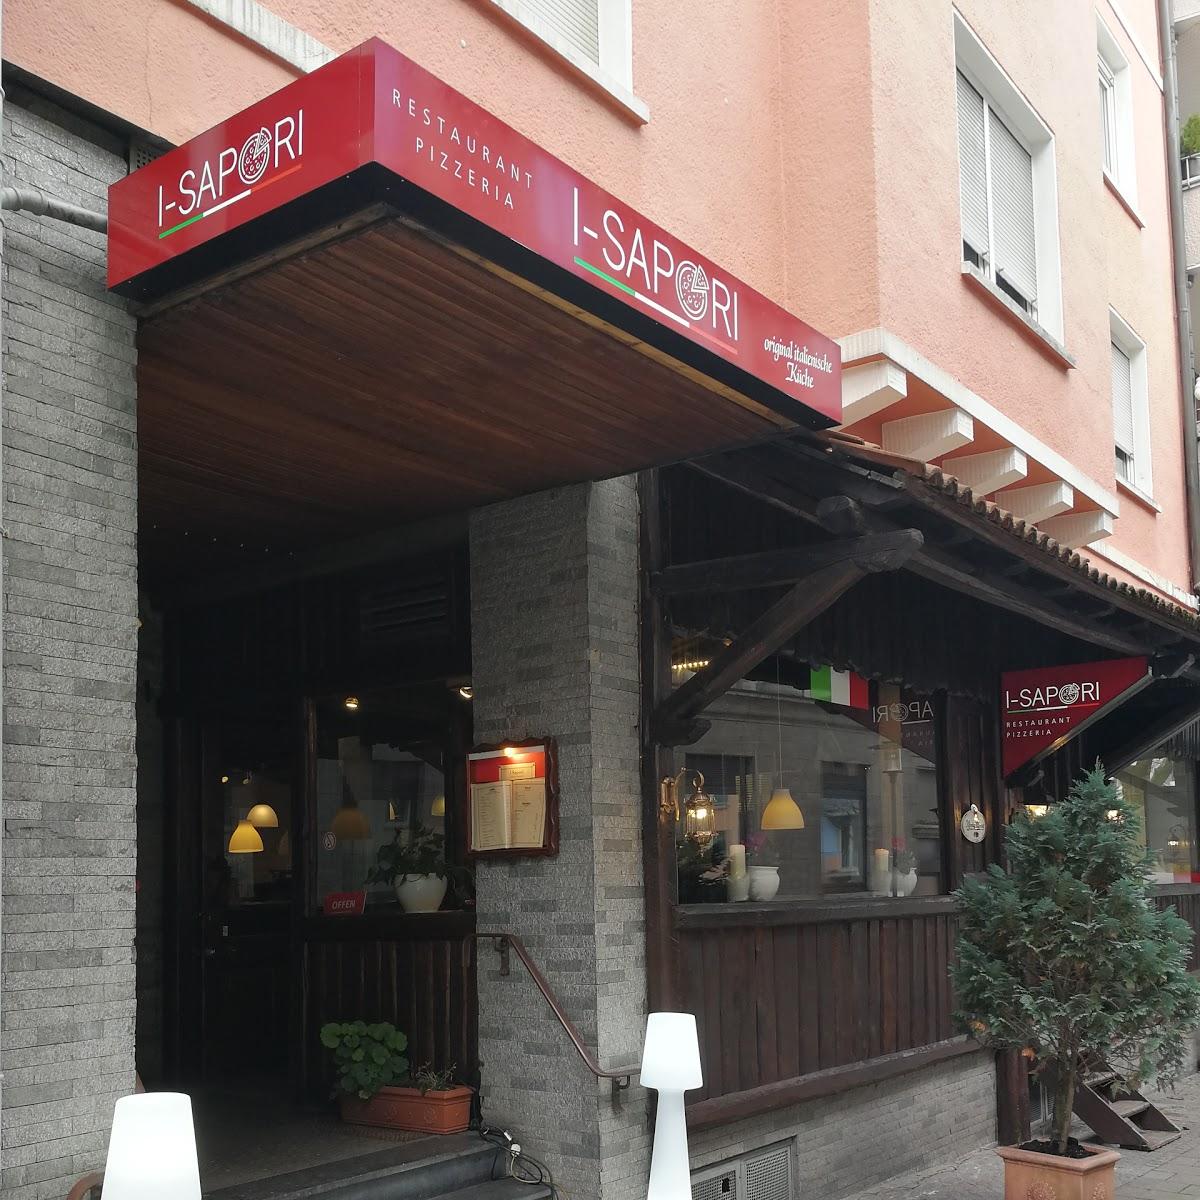 Restaurant "i-Sapori Restaurant & Pizzeria" in Solingen